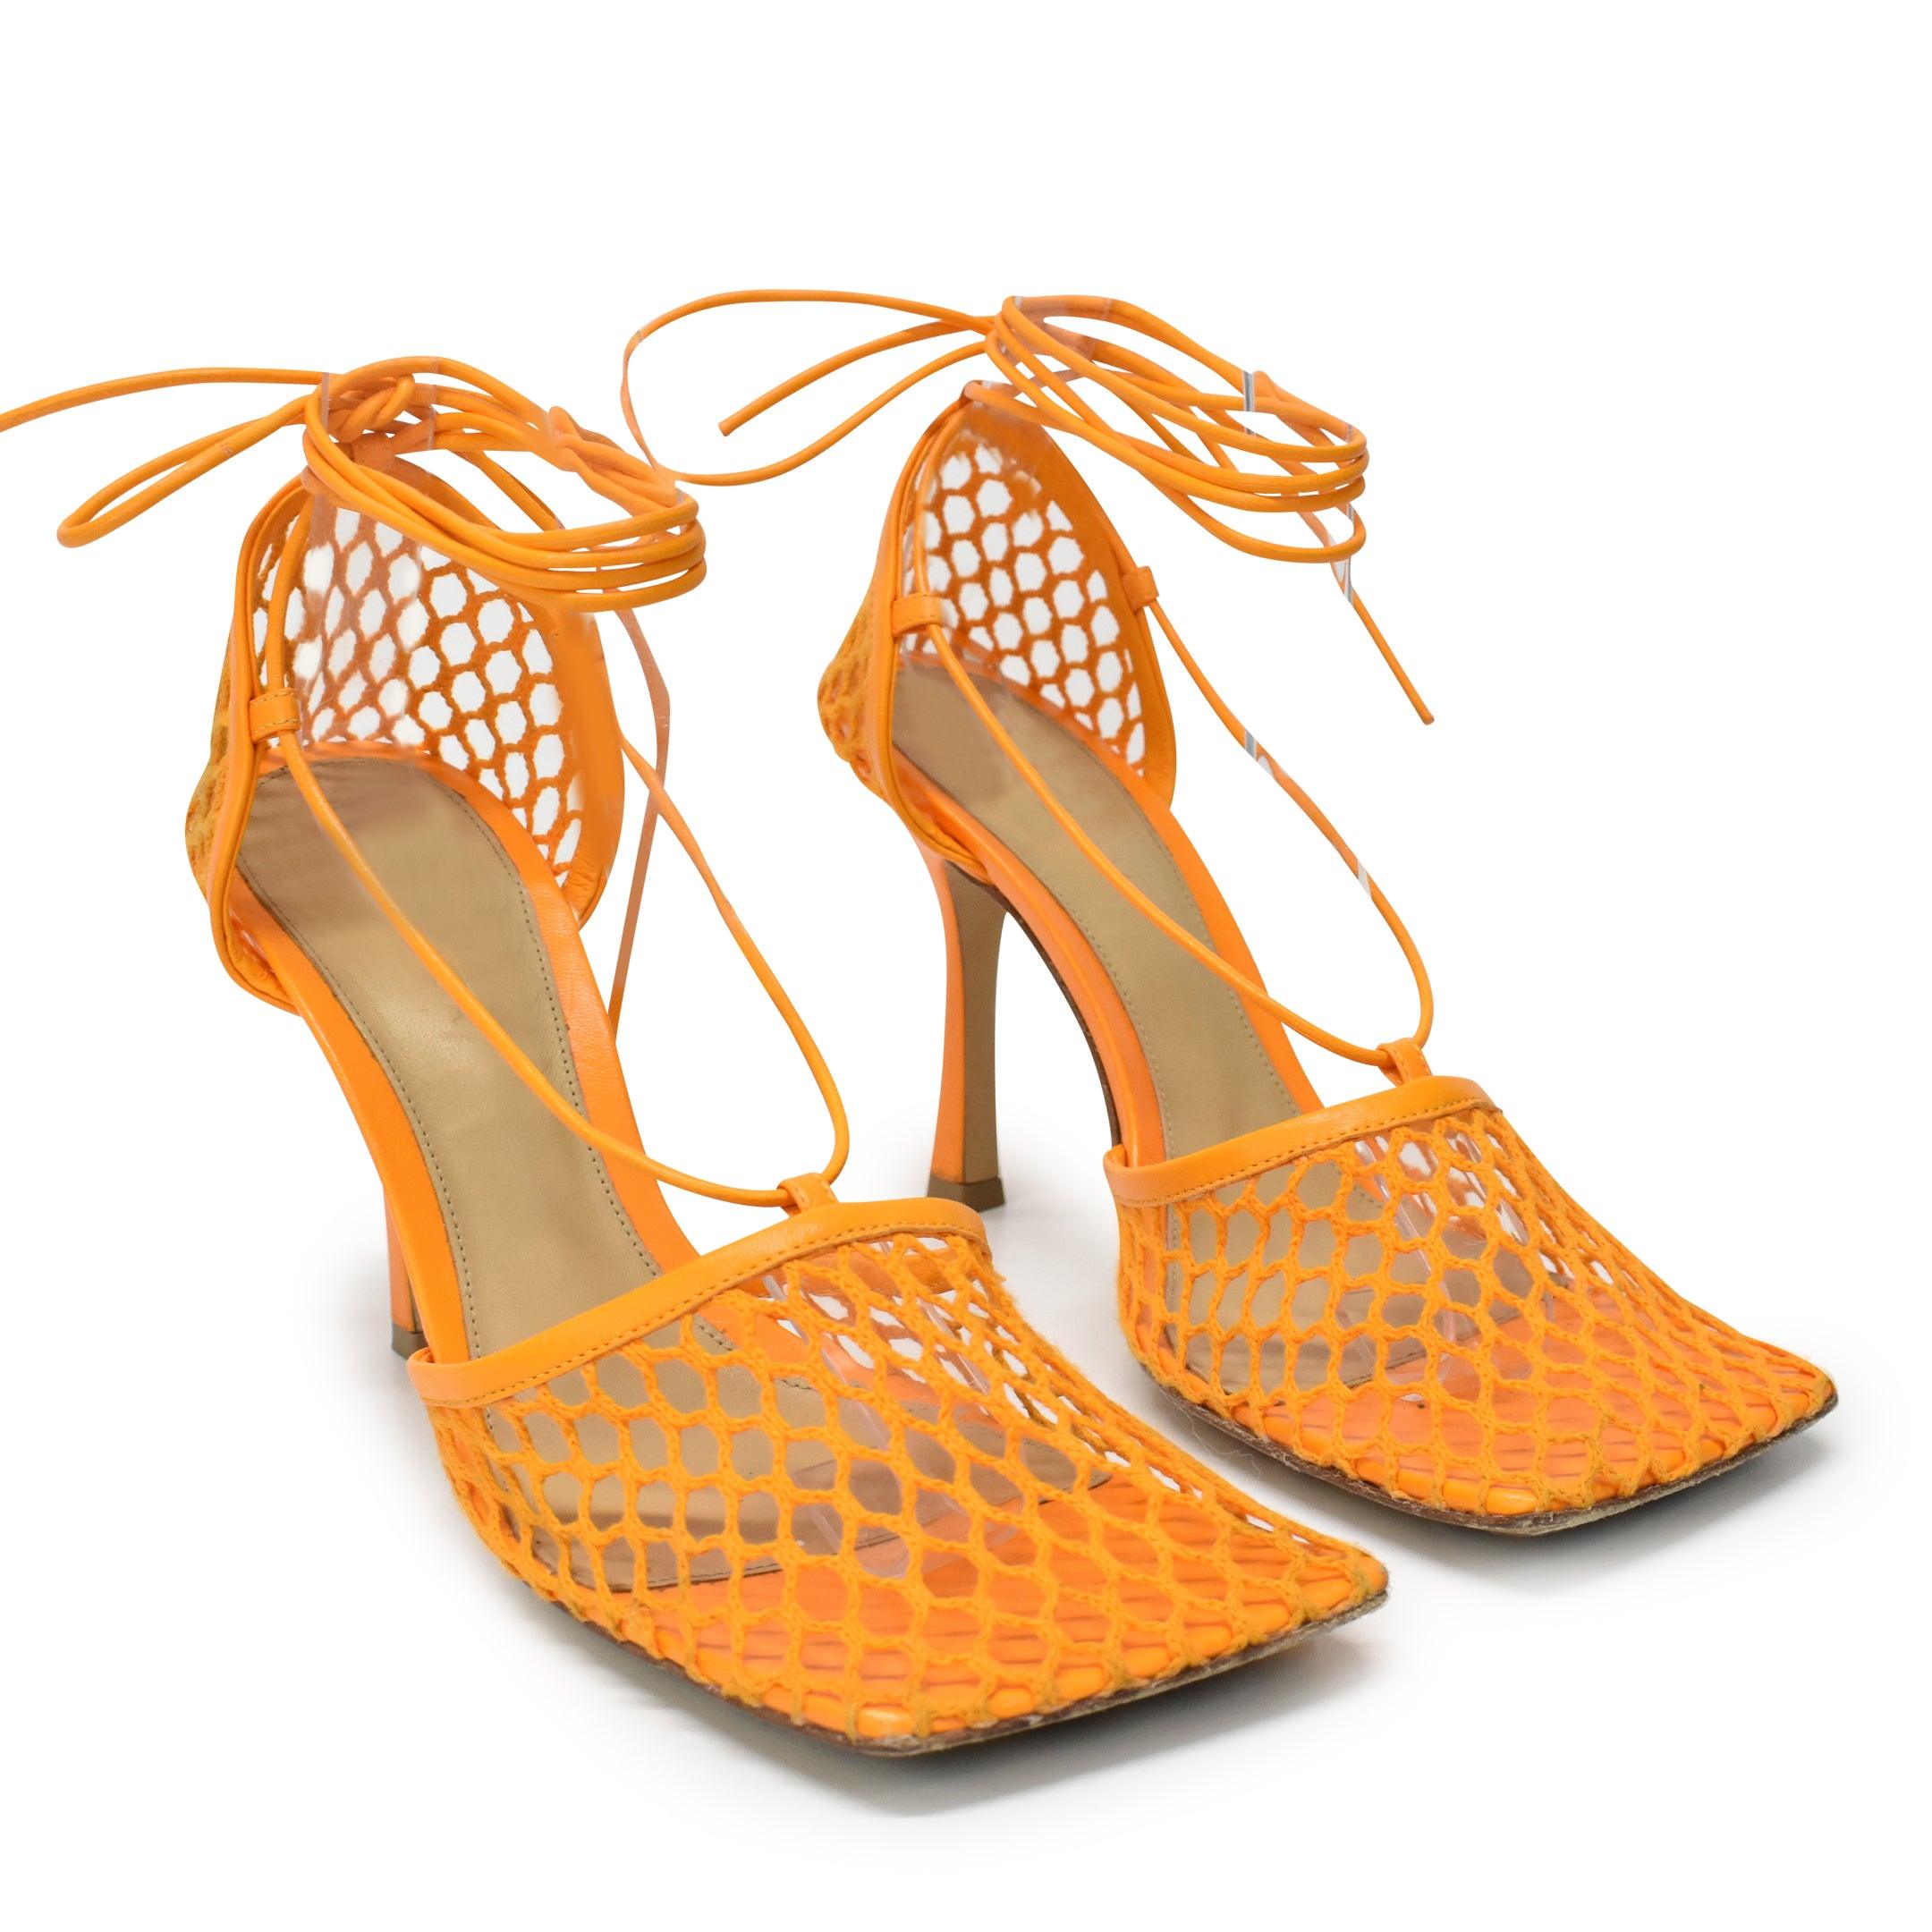 Bottega Veneta 'Stretch Lace-Up' Heels - Women's 39 - Fashionably Yours